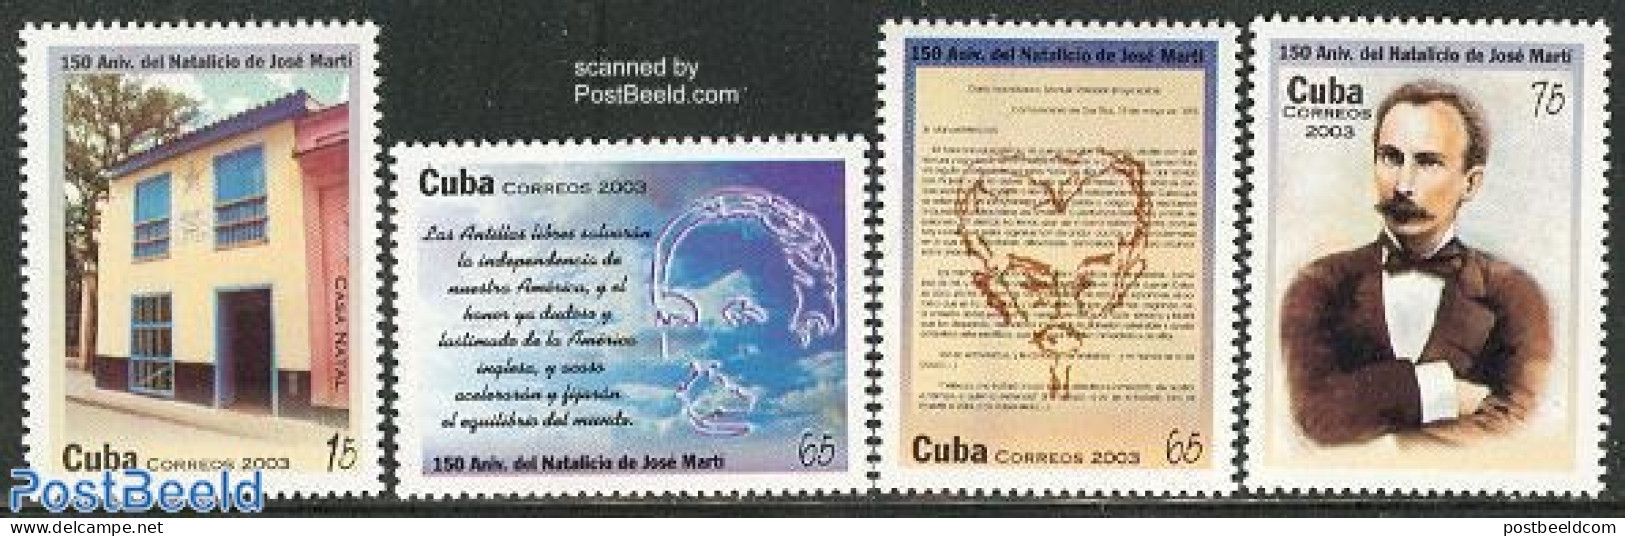 Cuba 2003 Jose Marti 4v, Mint NH, Art - Authors - Nuevos